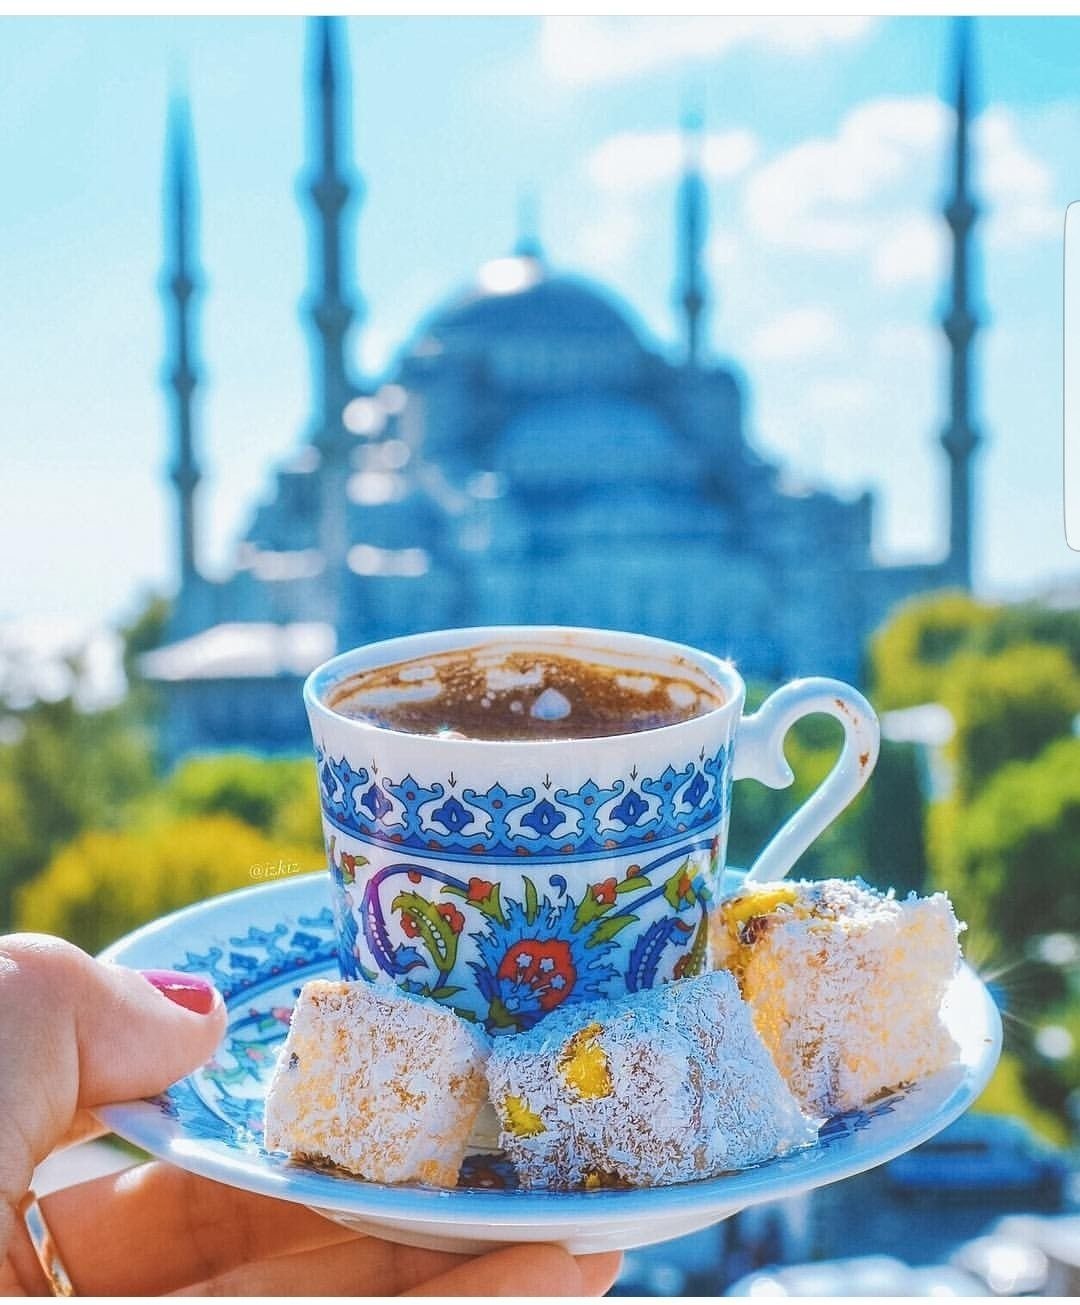 Открытки с добрым утром на турецком